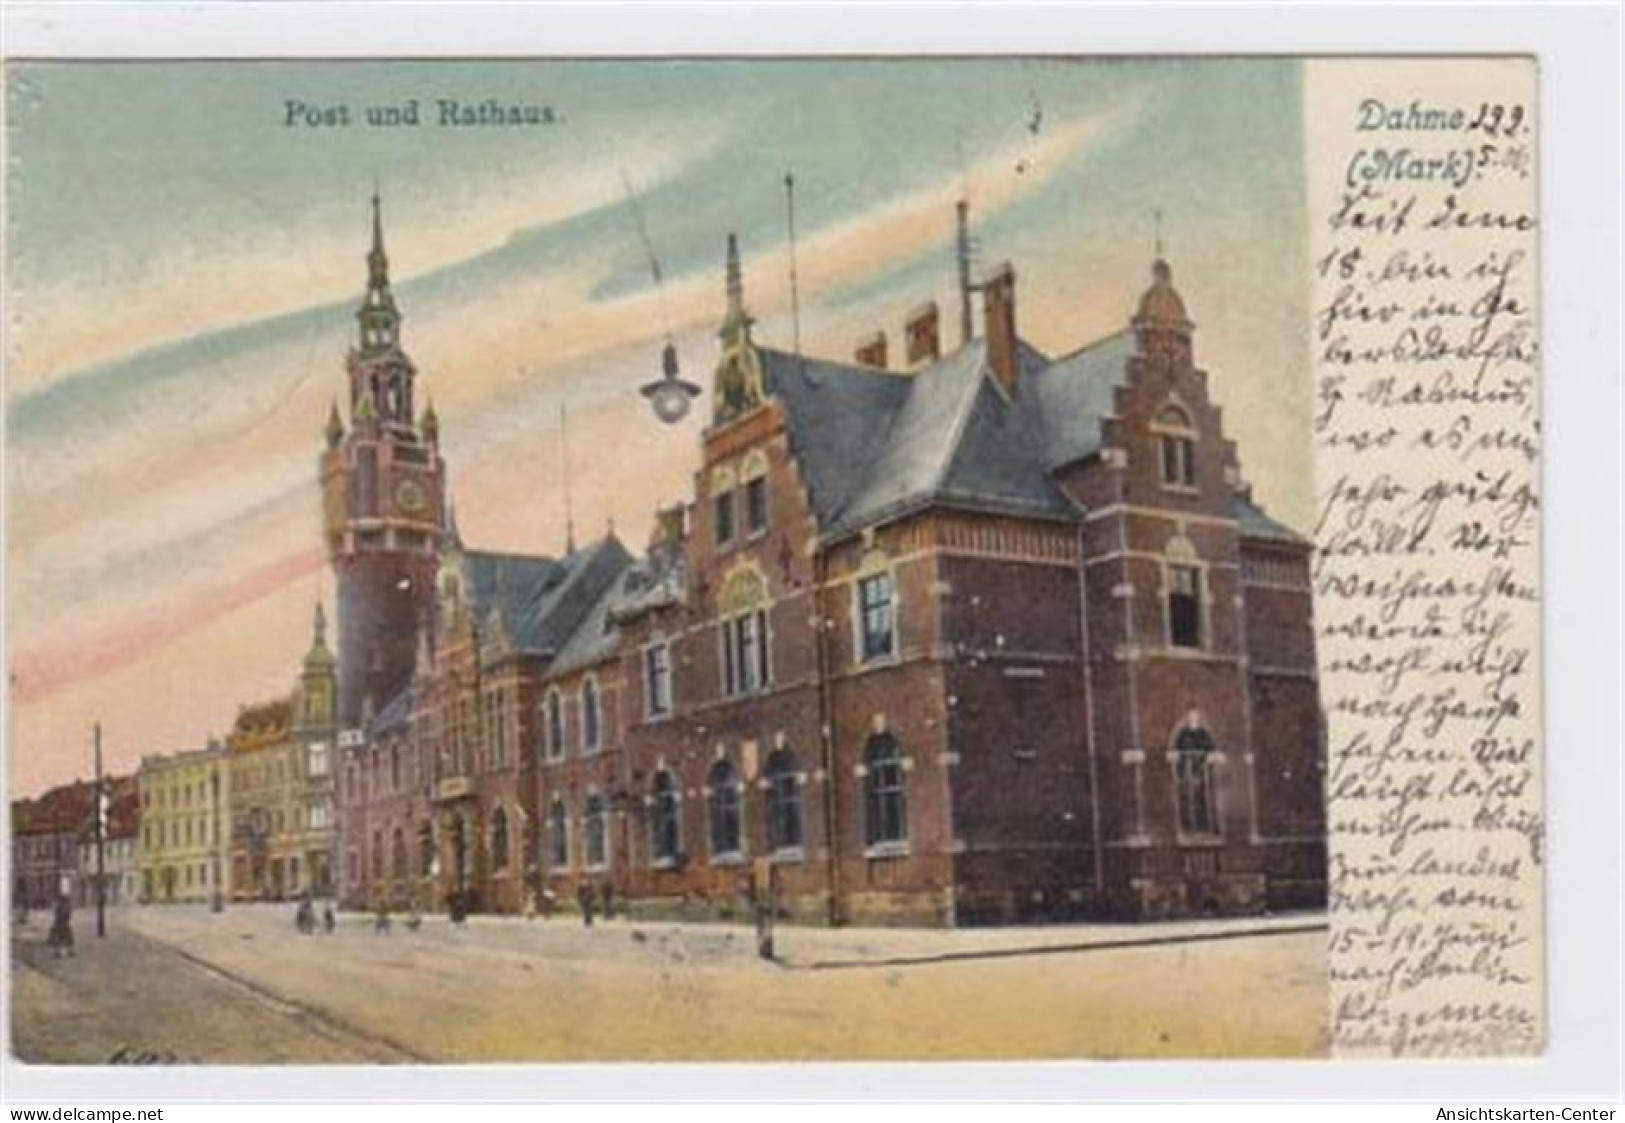 39016906 - Dahme ( Mark ) Mit Post Und Rathaus Gelaufen 1906. Leicht Fleckig, Sonst Gut Erhalten. - Gross Leuthen